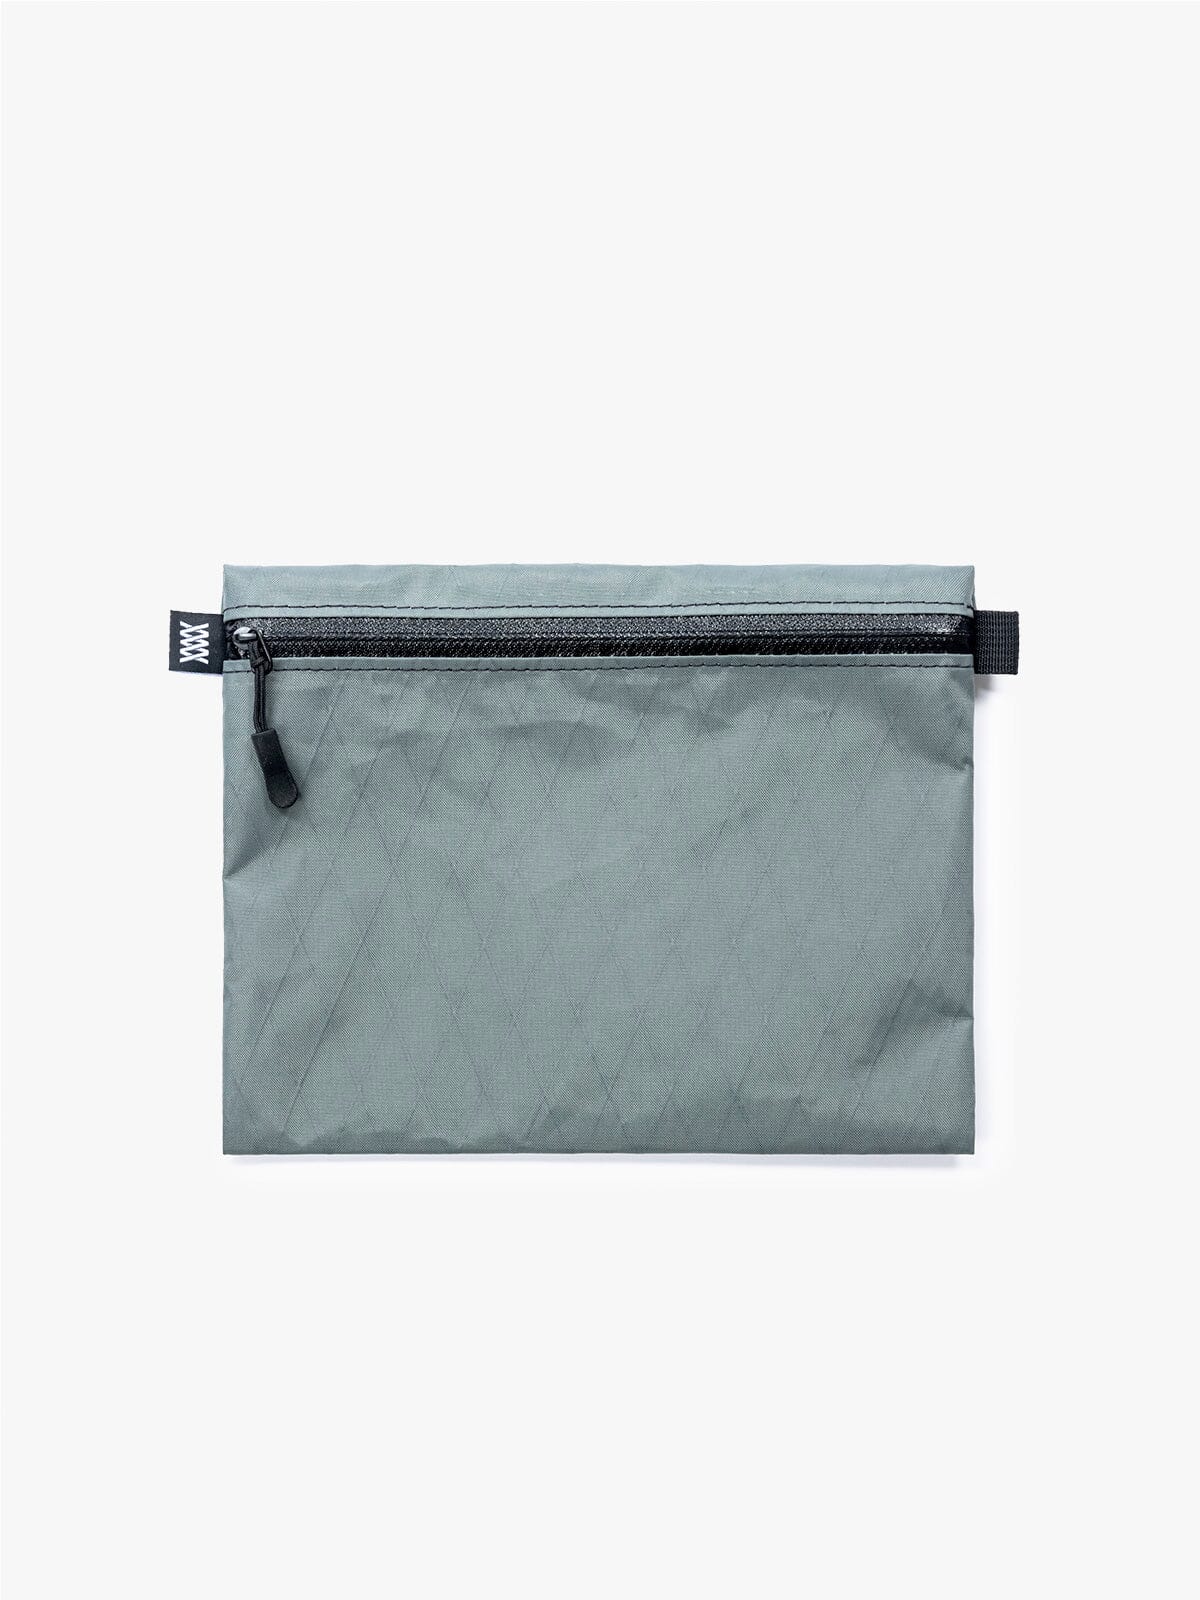 VX Wallet & Utility Pouch by Mission Workshop - Säänkestävät laukut ja tekniset vaatteet - San Francisco & Los Angeles - Rakennettu kestämään - ikuinen takuu